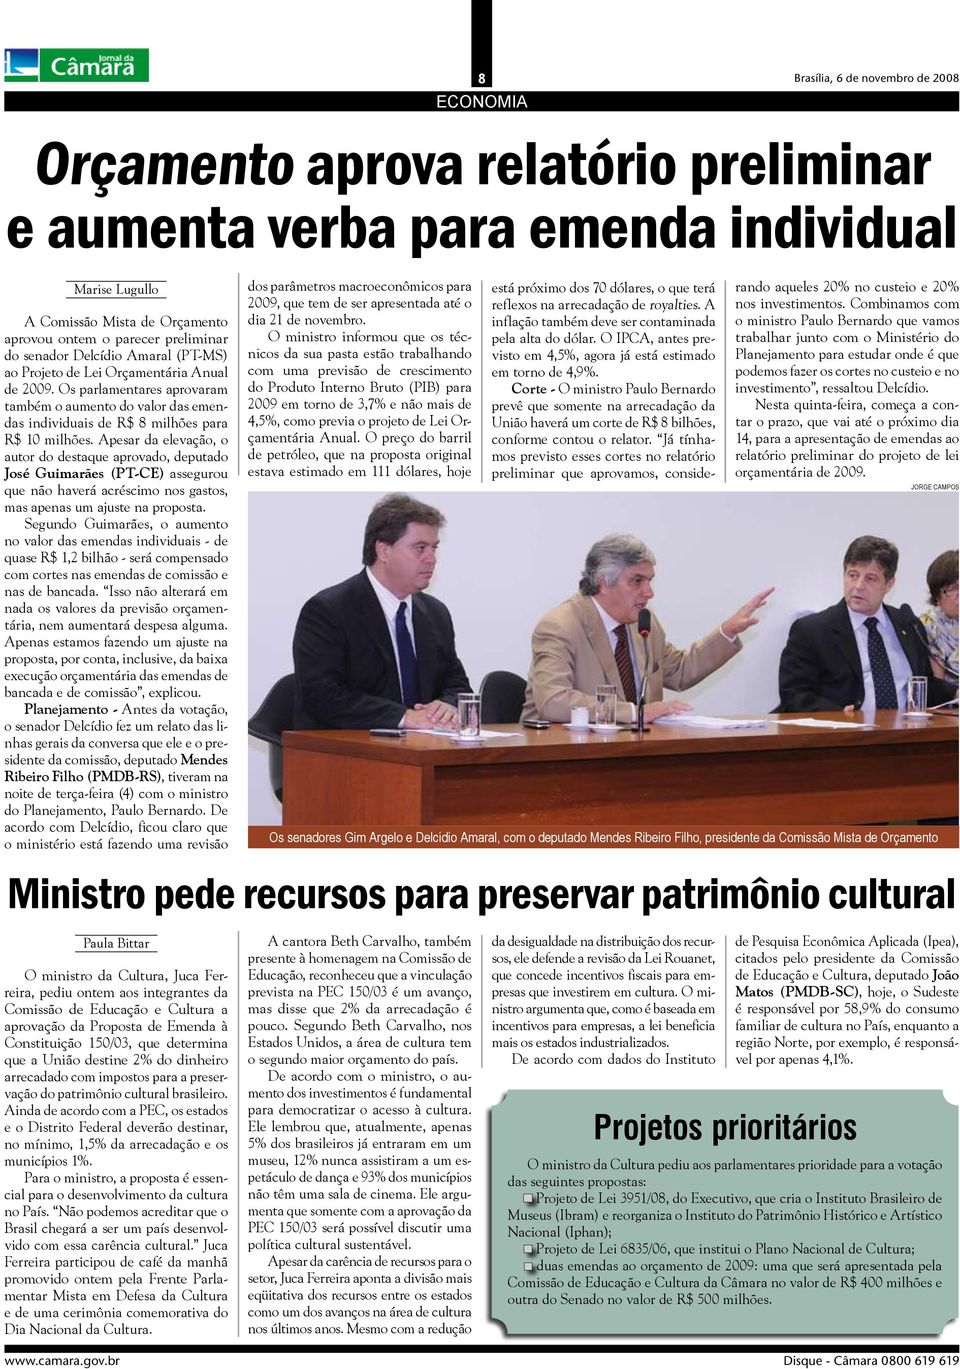 Apesar da elevação, o autor do destaque aprovado, deputado José Guimarães (PT-CE) assegurou que não haverá acréscimo nos gastos, mas apenas um ajuste na proposta.